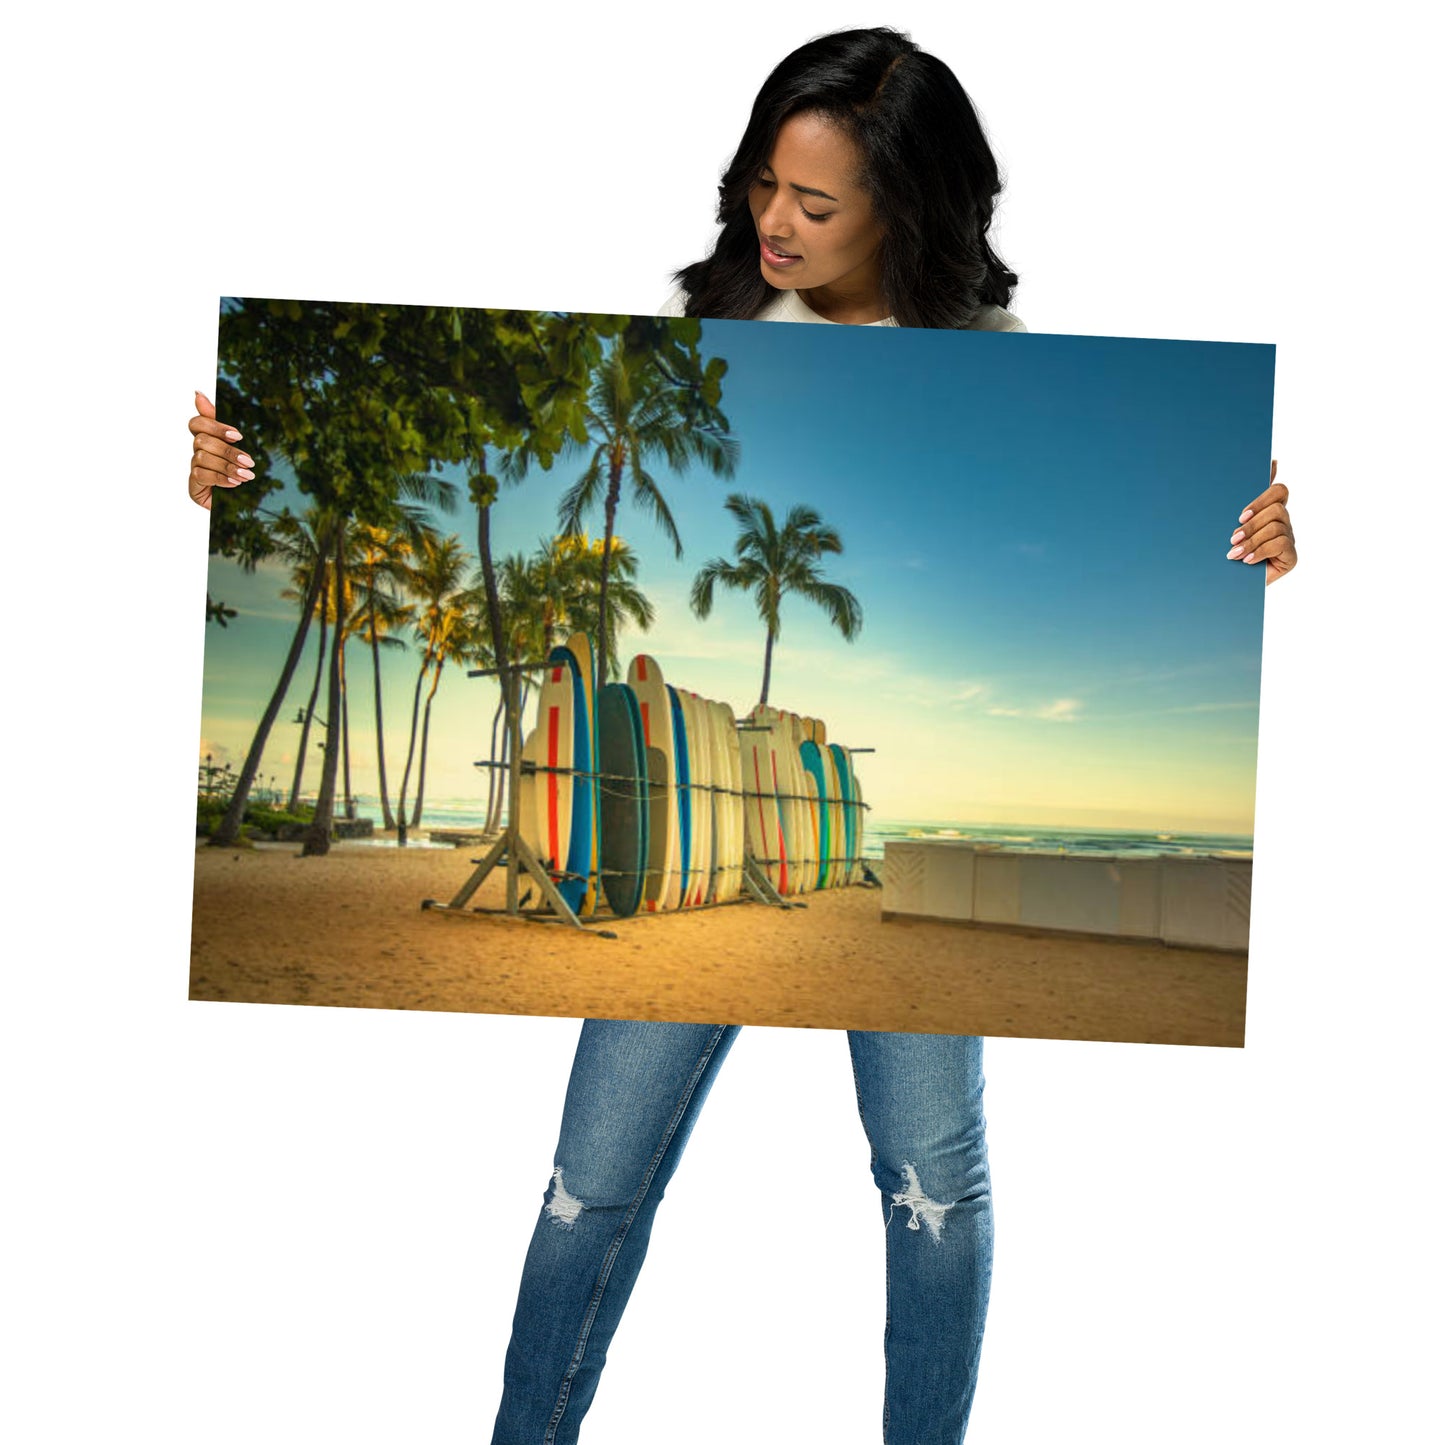 Your Wave is Waiting: Hawaiian Surfboard Dreams Coastal Lifestyle Landscape Loose Wall Art Print